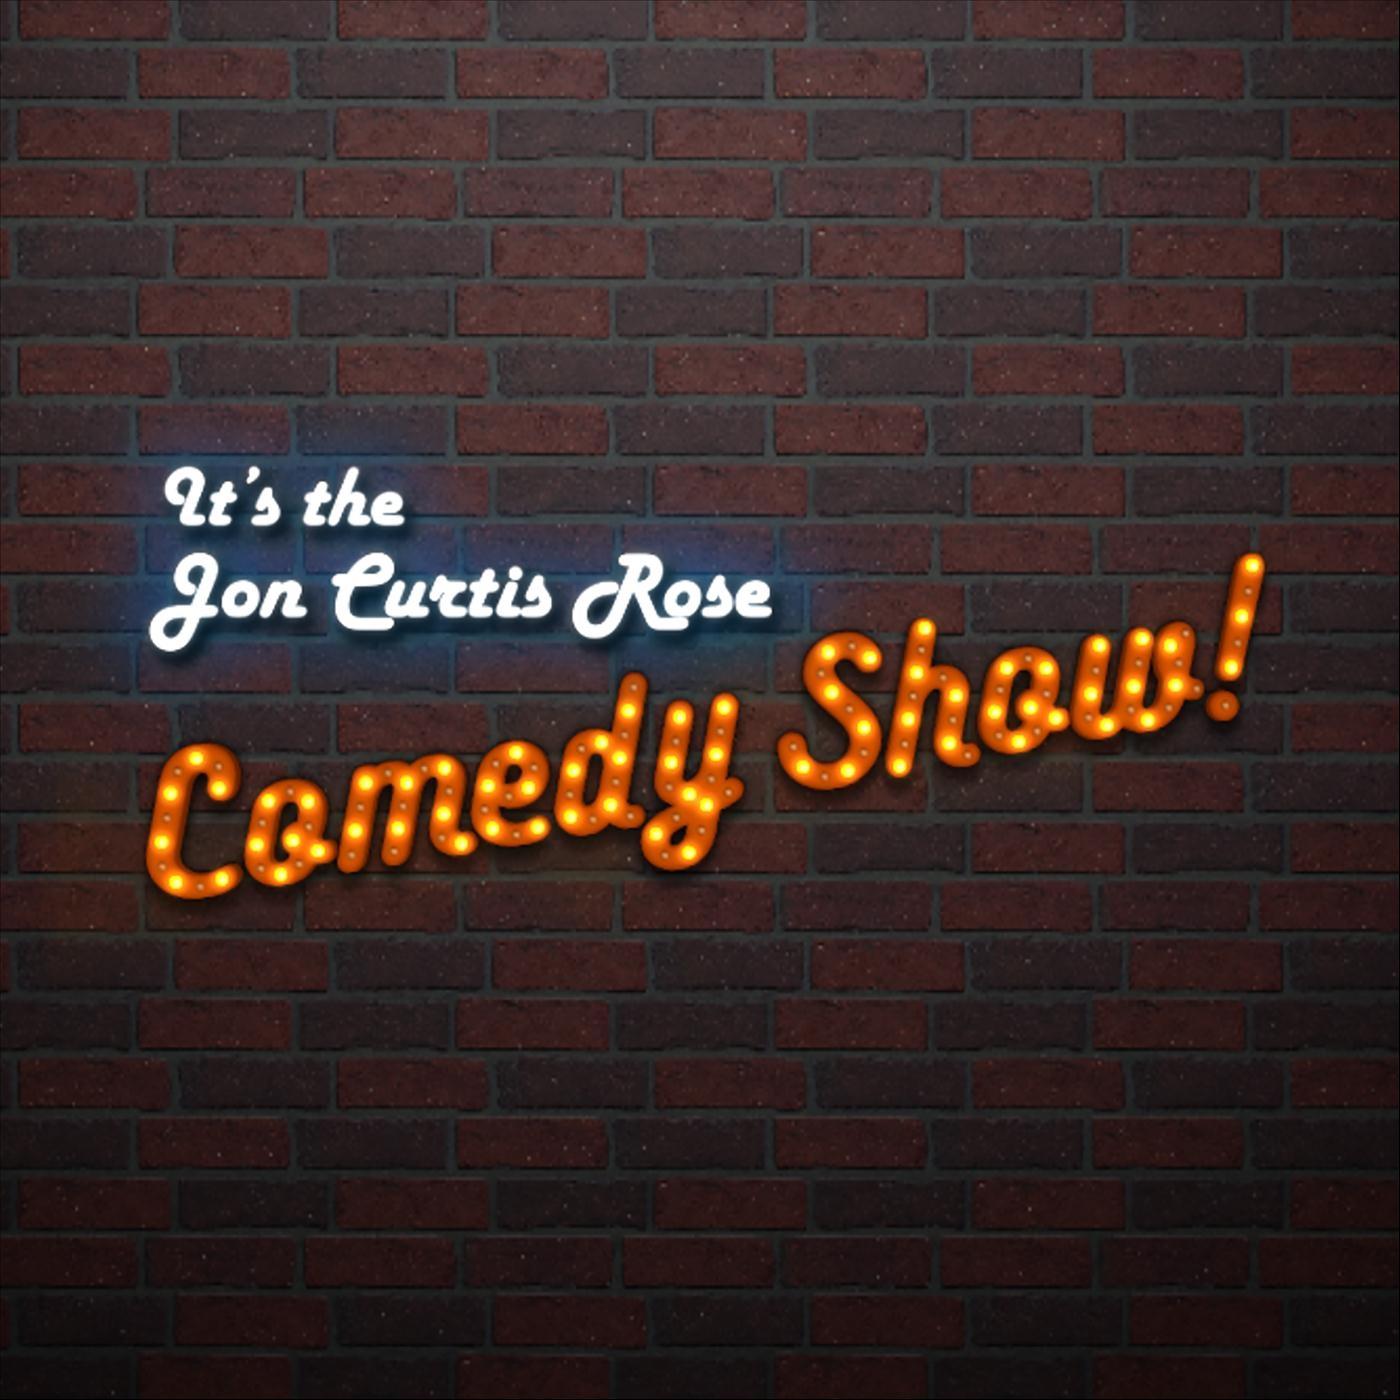 Comedy Show